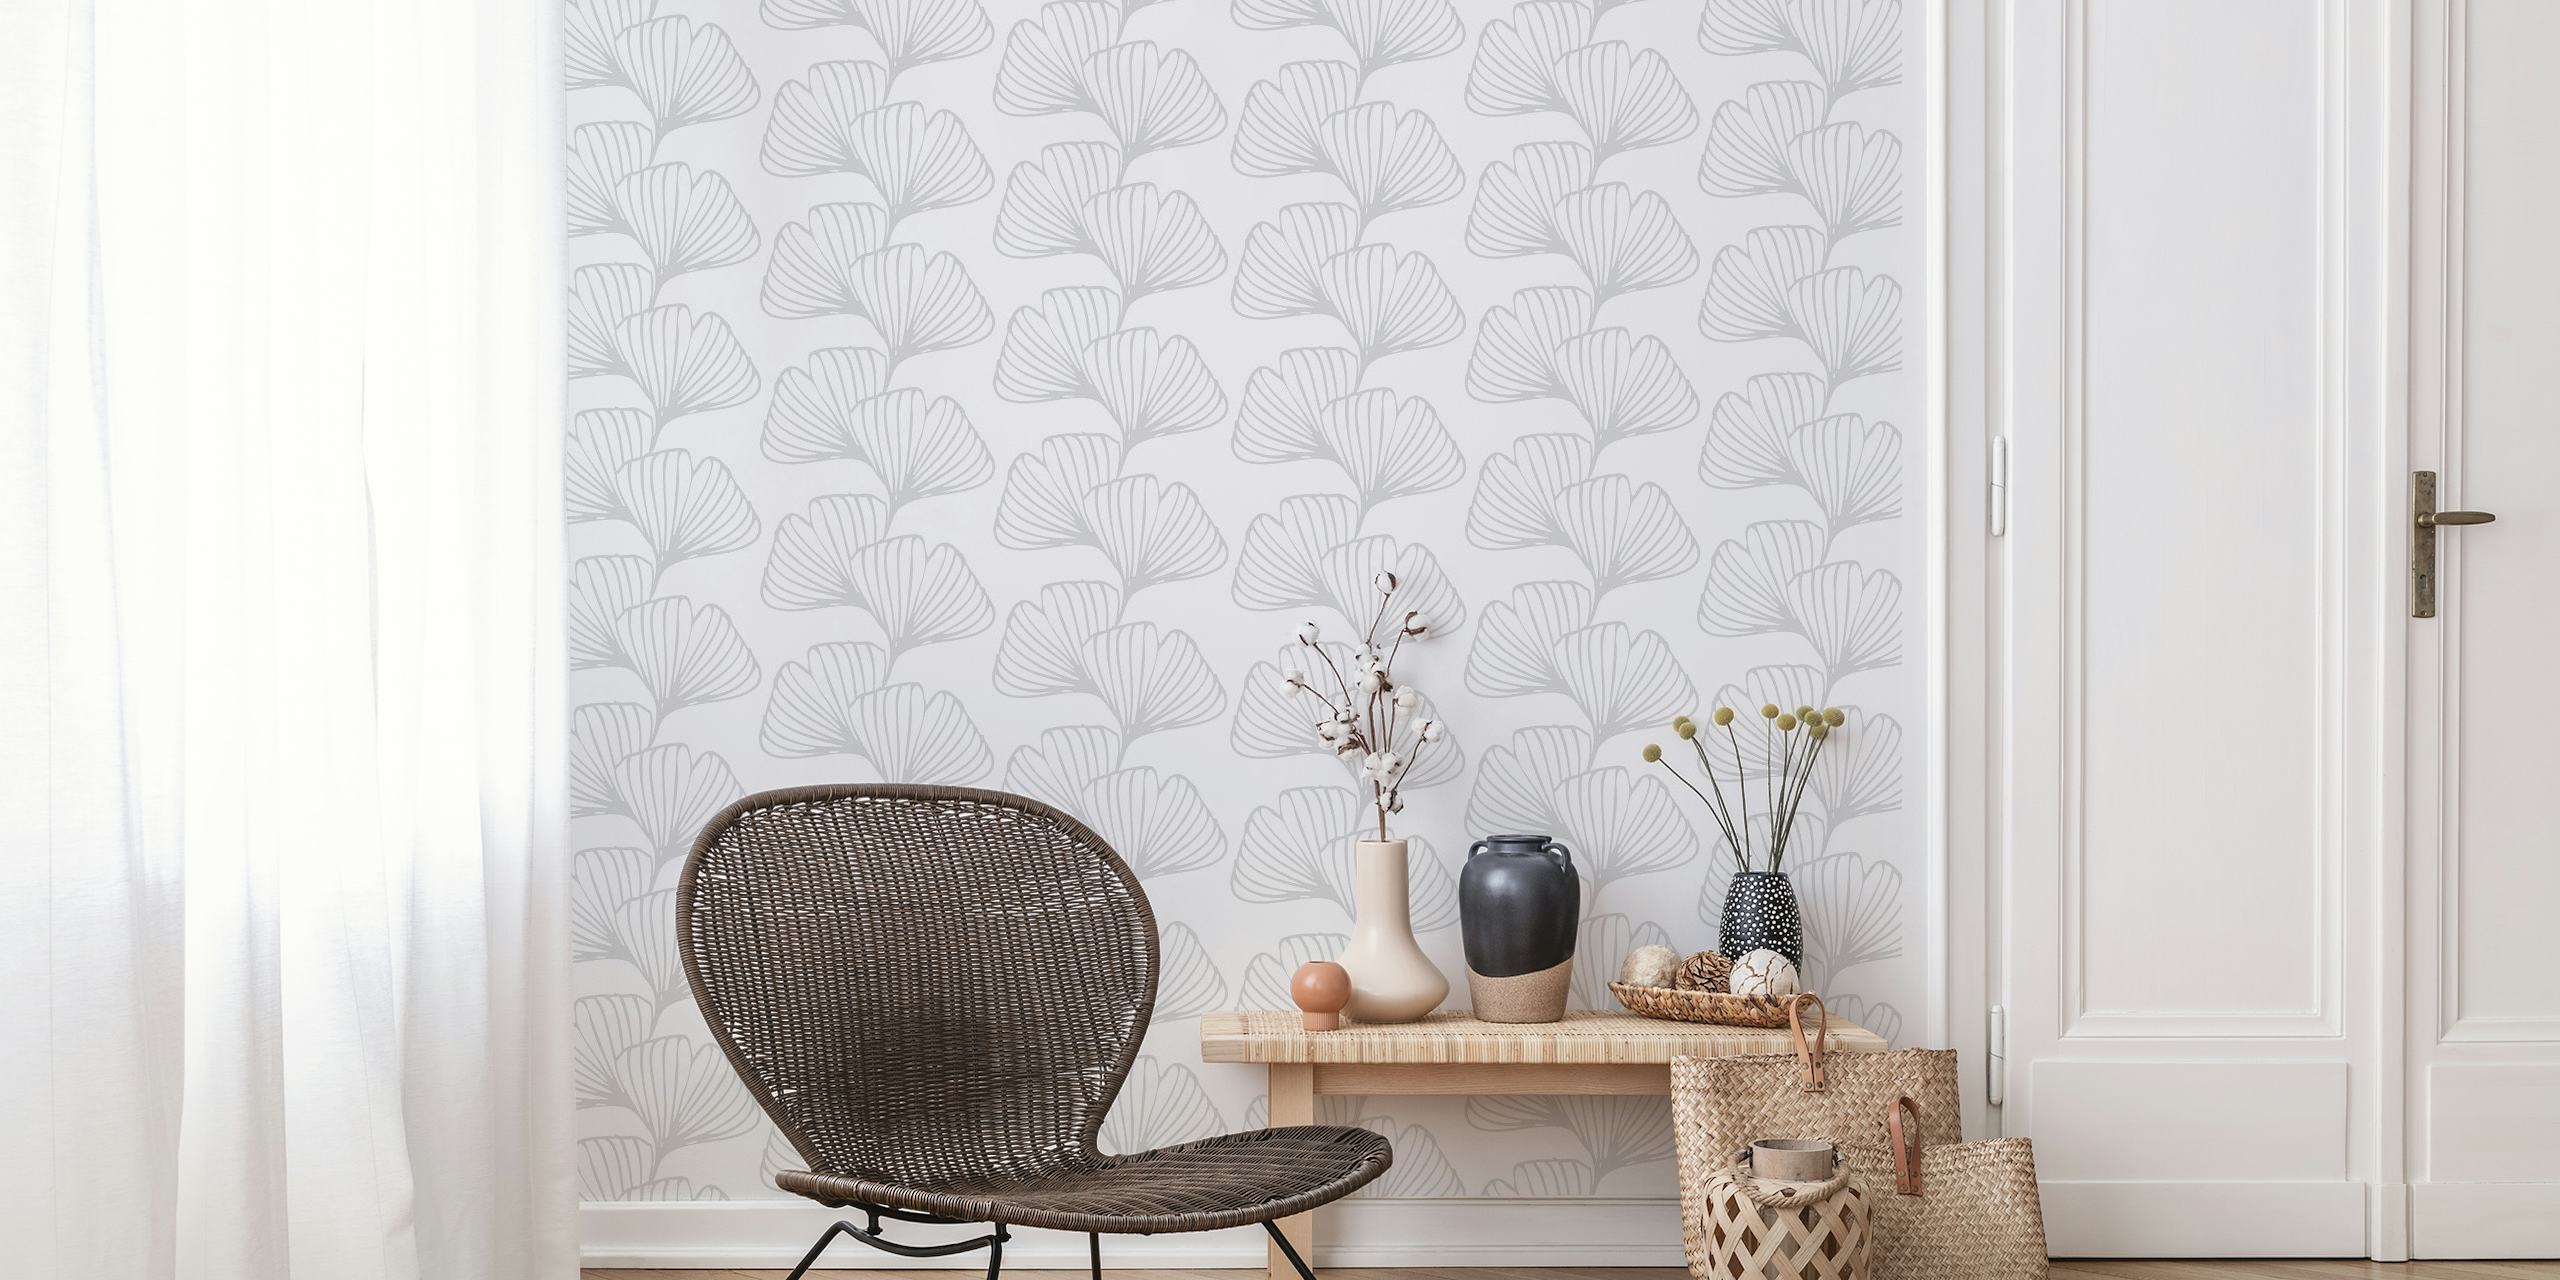 Fotomural vinílico de parede com padrão de folha de ginkgo em tons suaves para decoração de interiores